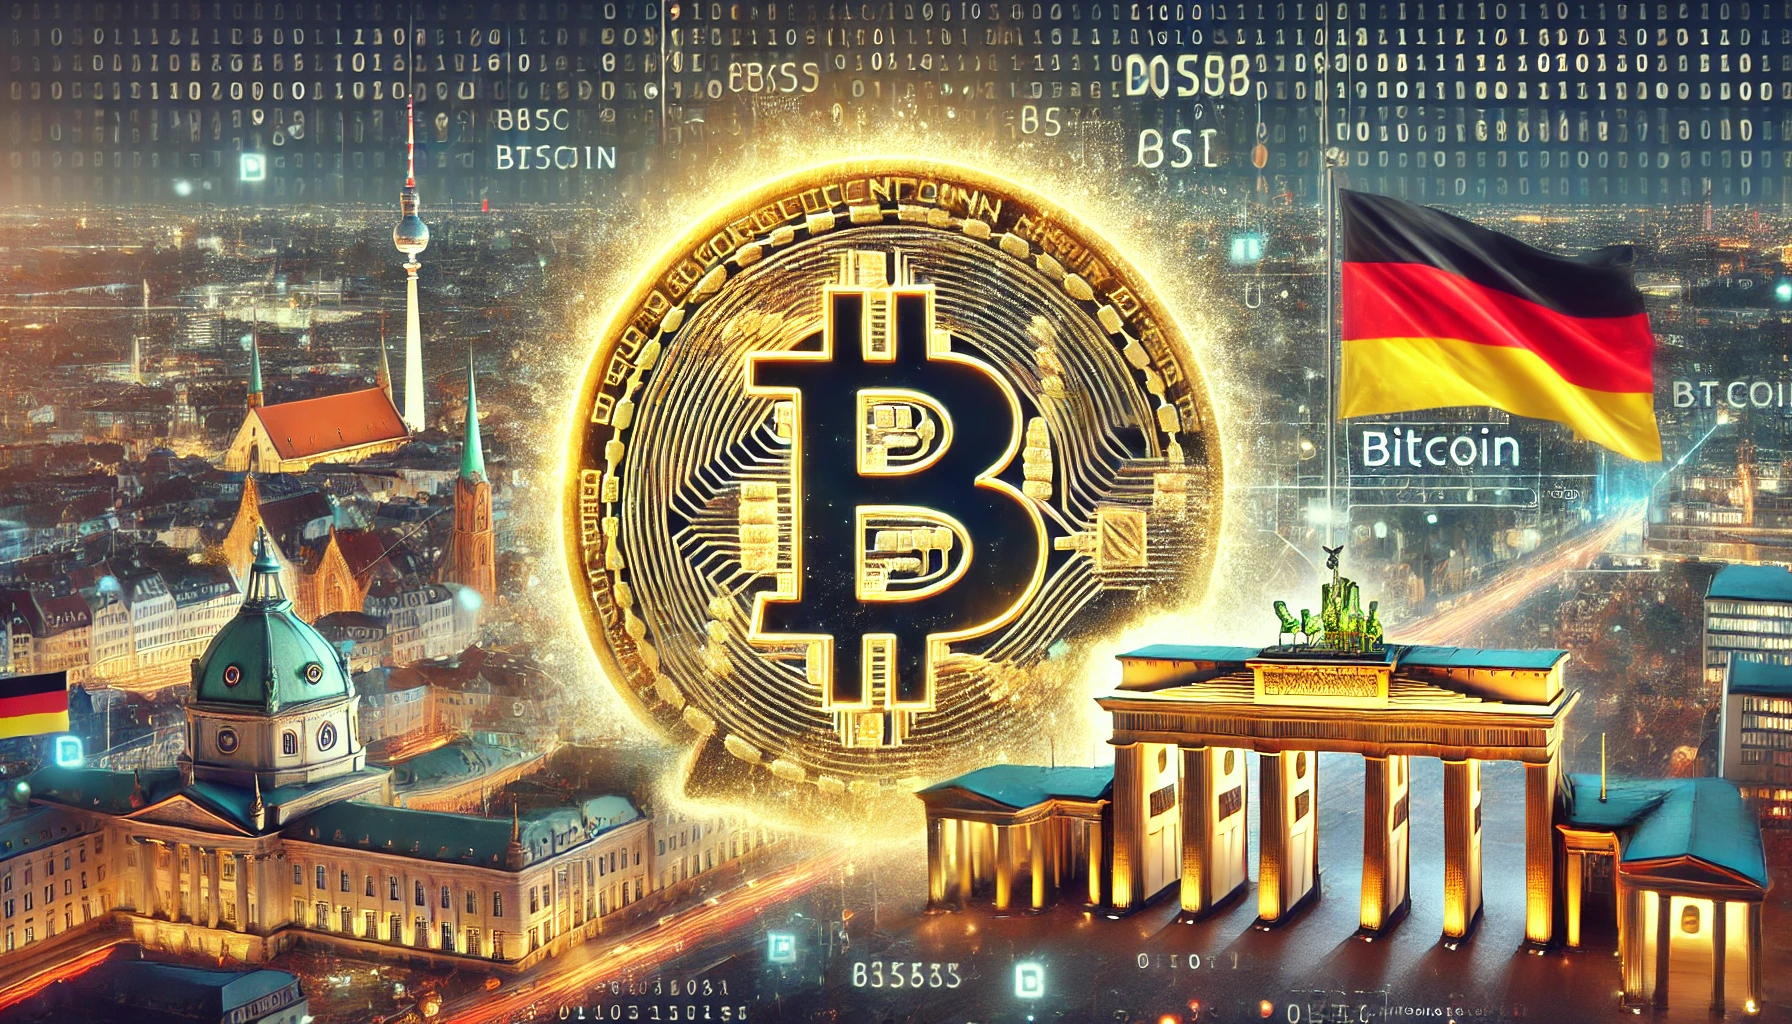 Duitse recherche verkoopt meer dan $195 miljoen aan inbeslaggenomen Bitcoin